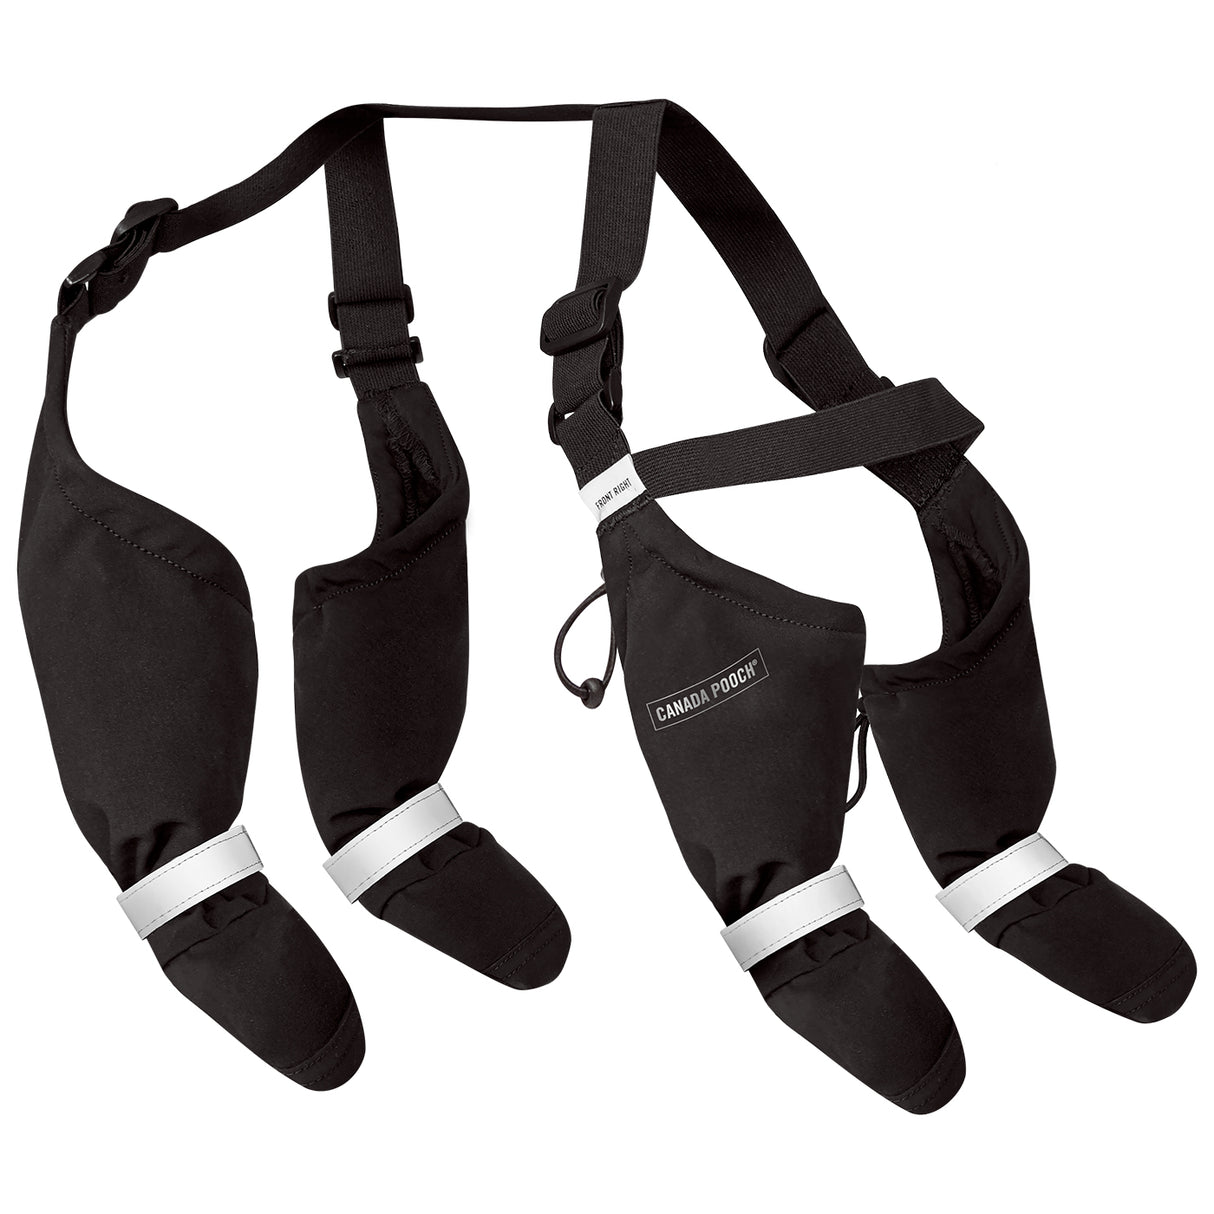 Canada Pooch Suspender Boots - Size 1